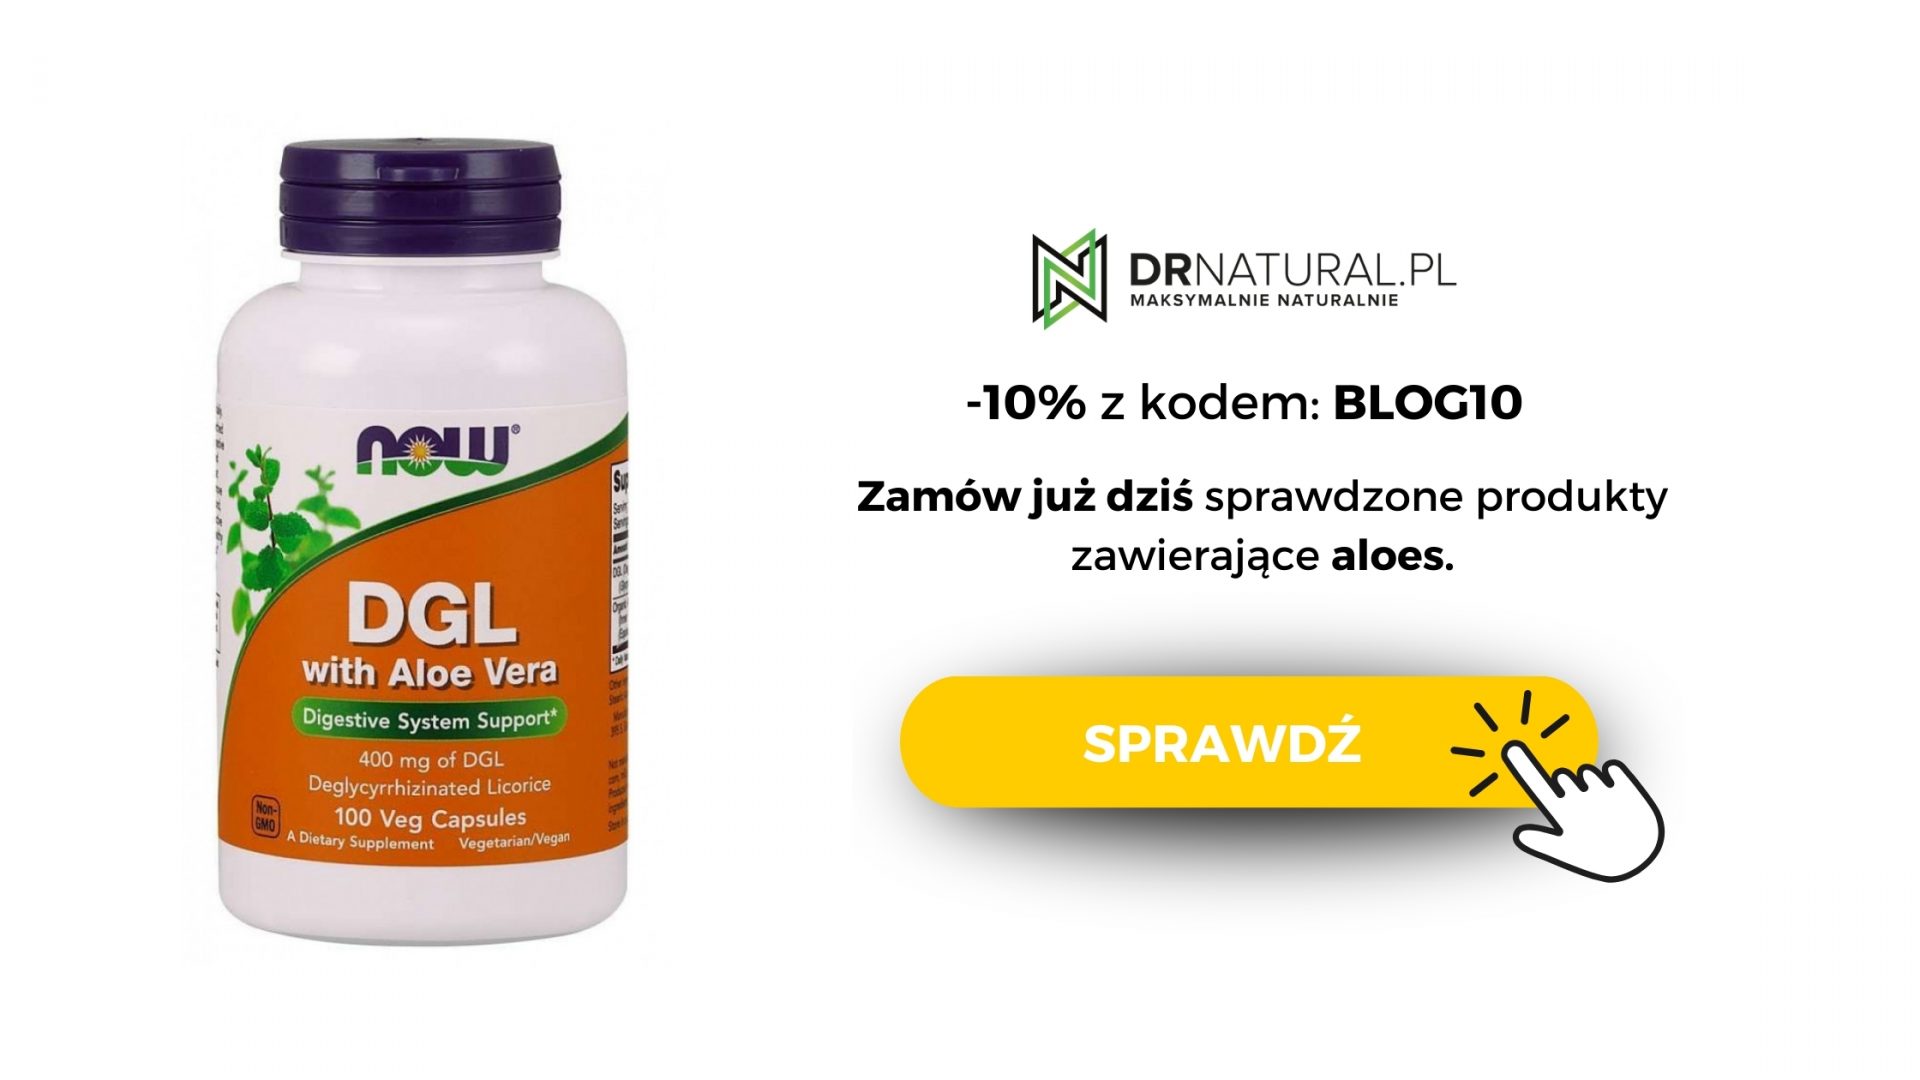 Reklama kapsułek DGL z aloesem od DrNatural. Zdjęcie białej butelki z suplementem dietetycznym, która promuje zdrowie układu trawiennego, z kodem zniżkowym i przyciskiem zachęcającym do sprawdzenia oferty.